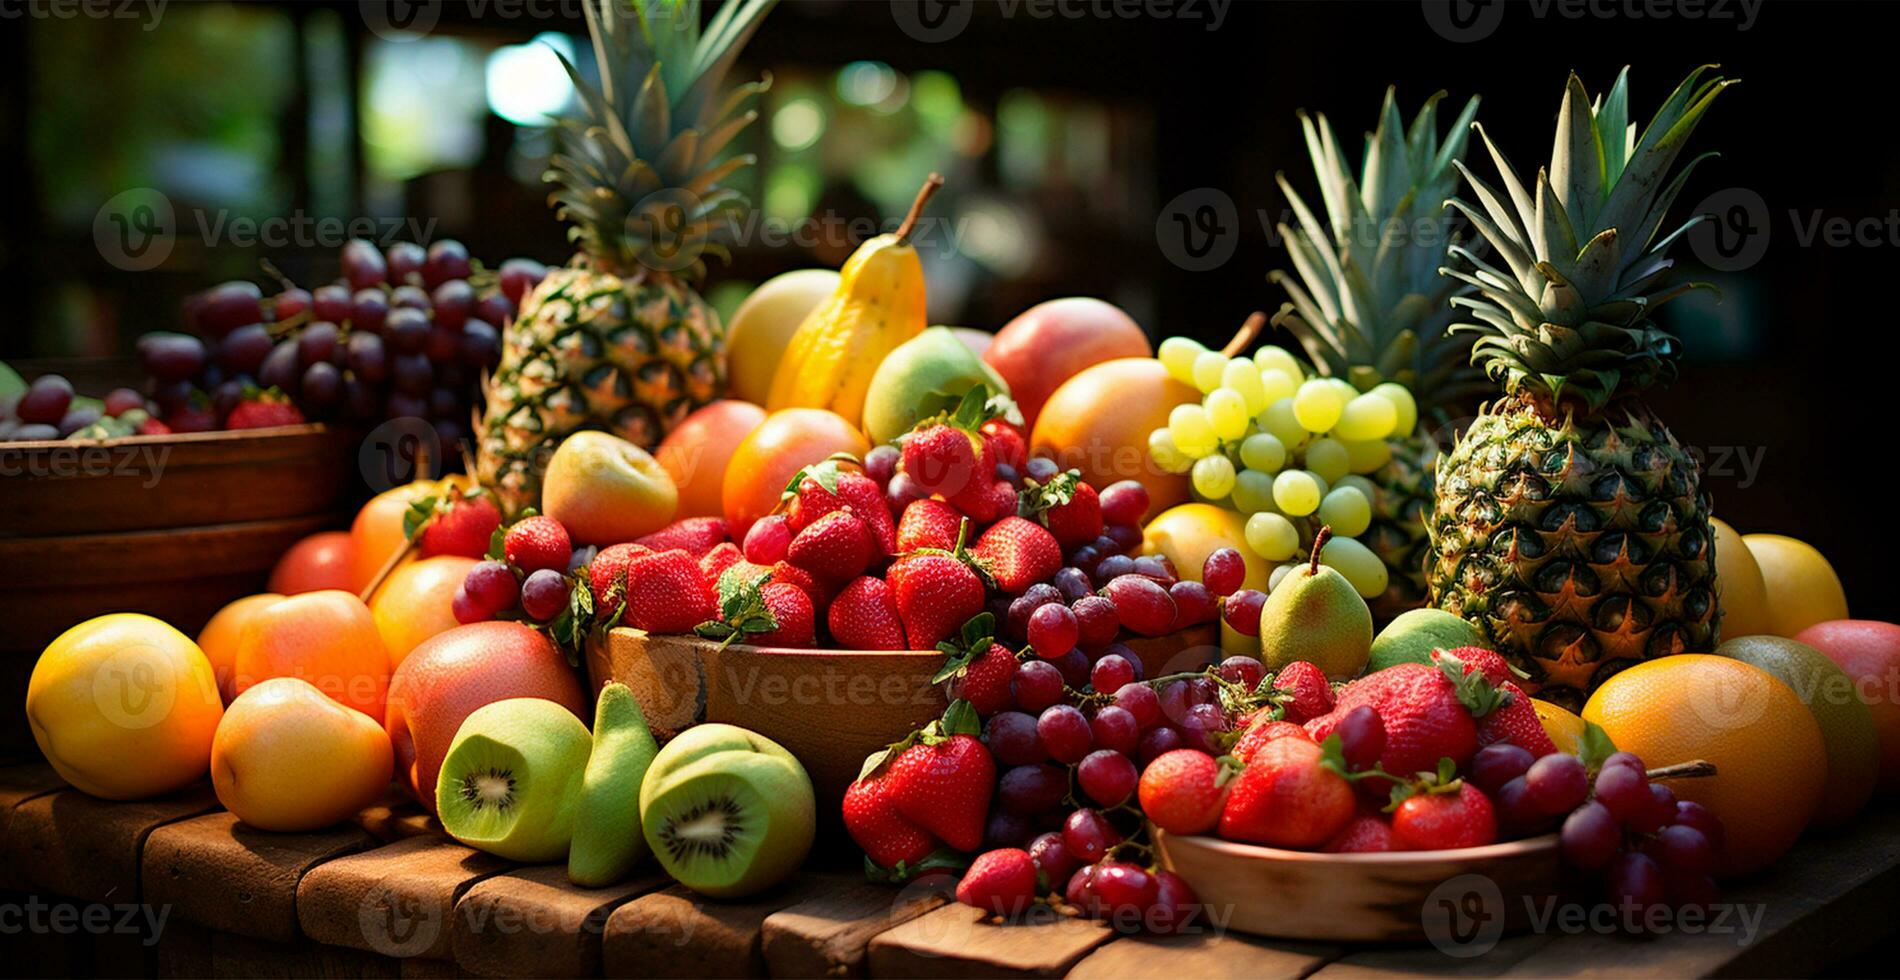 matvaror Lagra, mataffär, färsk frukt marknadsföra, eco mat - ai genererad bild foto